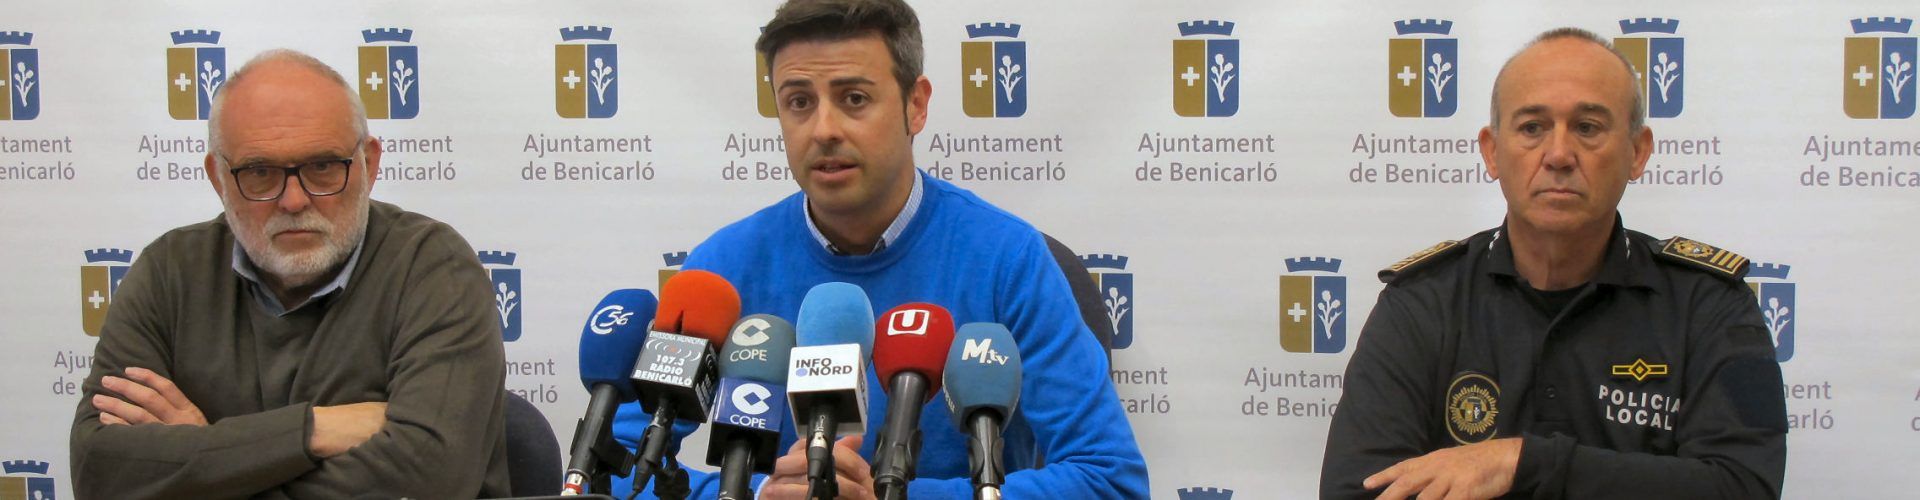 Les Falles de Benicarló 2019 es tanquen amb una gran afluència de públic i reducció d’incidents